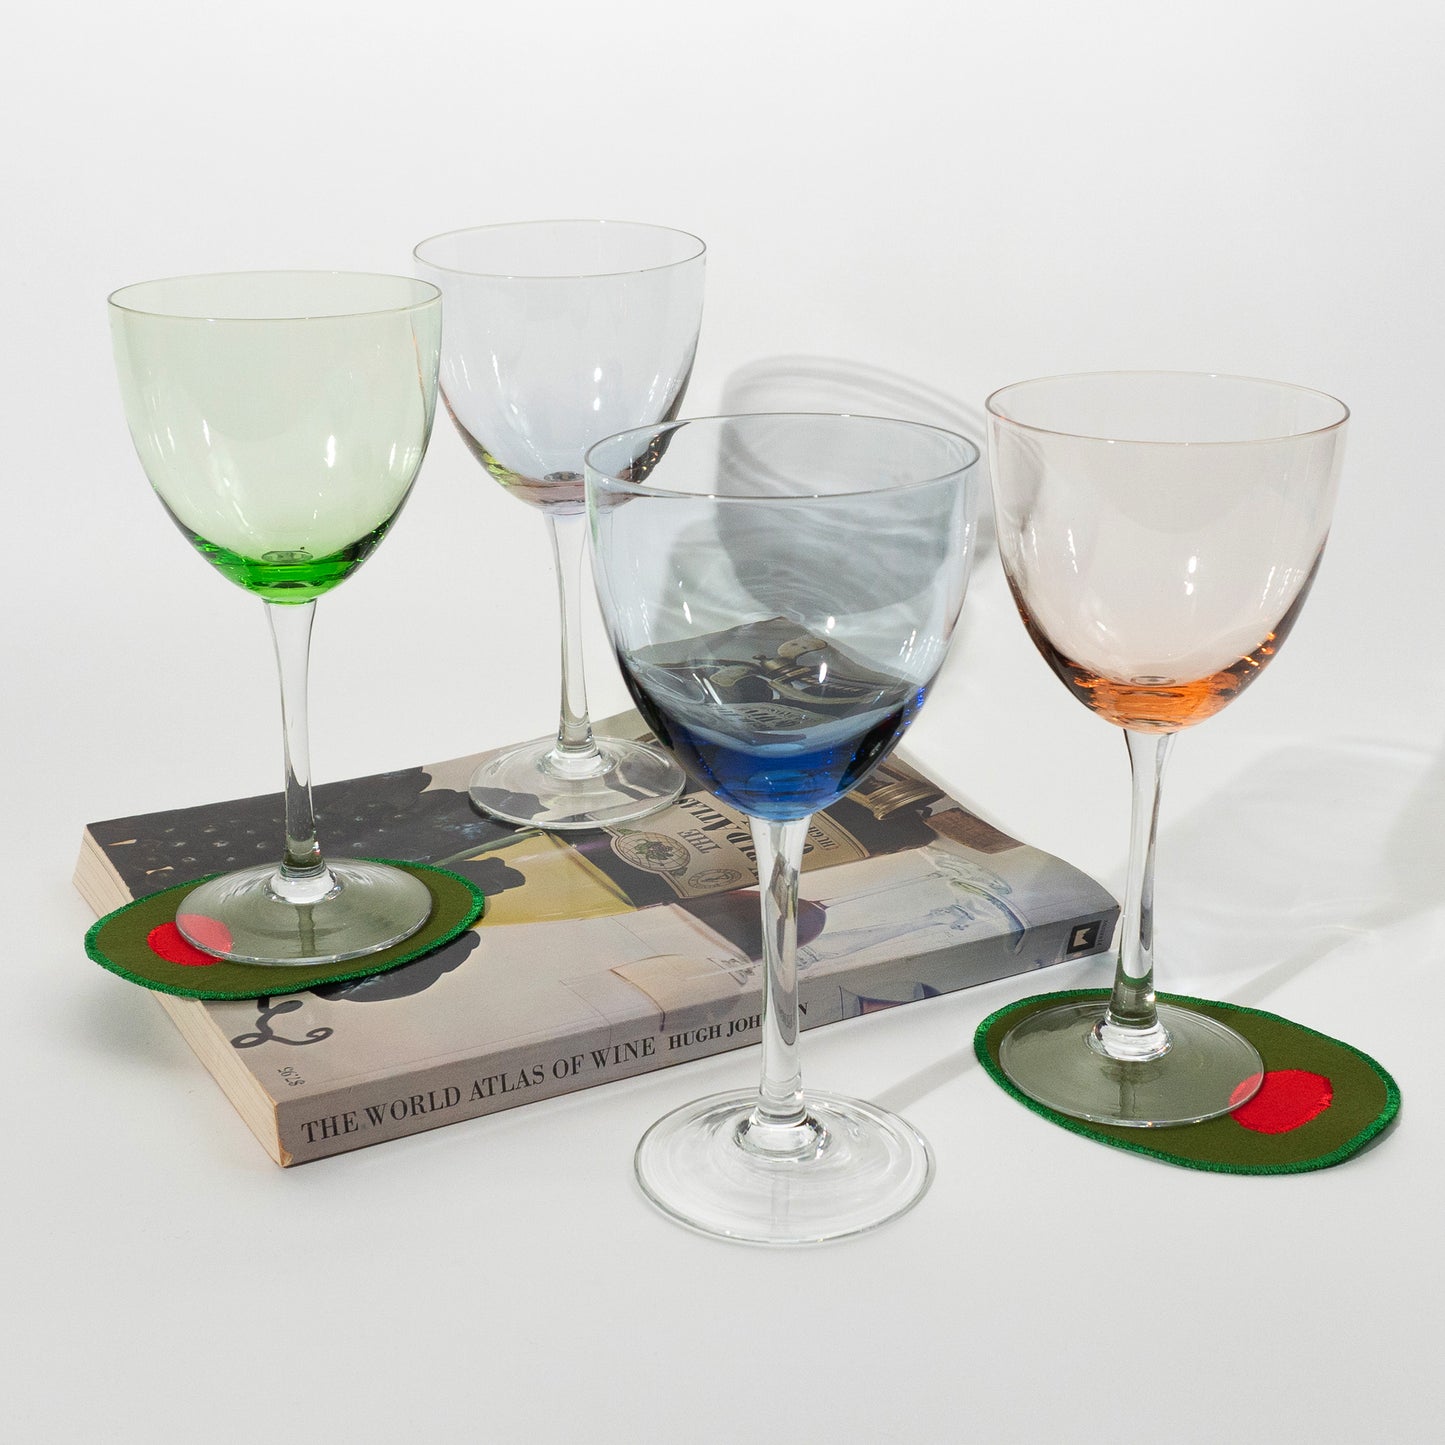 Vintage Multi-colored Wine Glasses, Set of 4